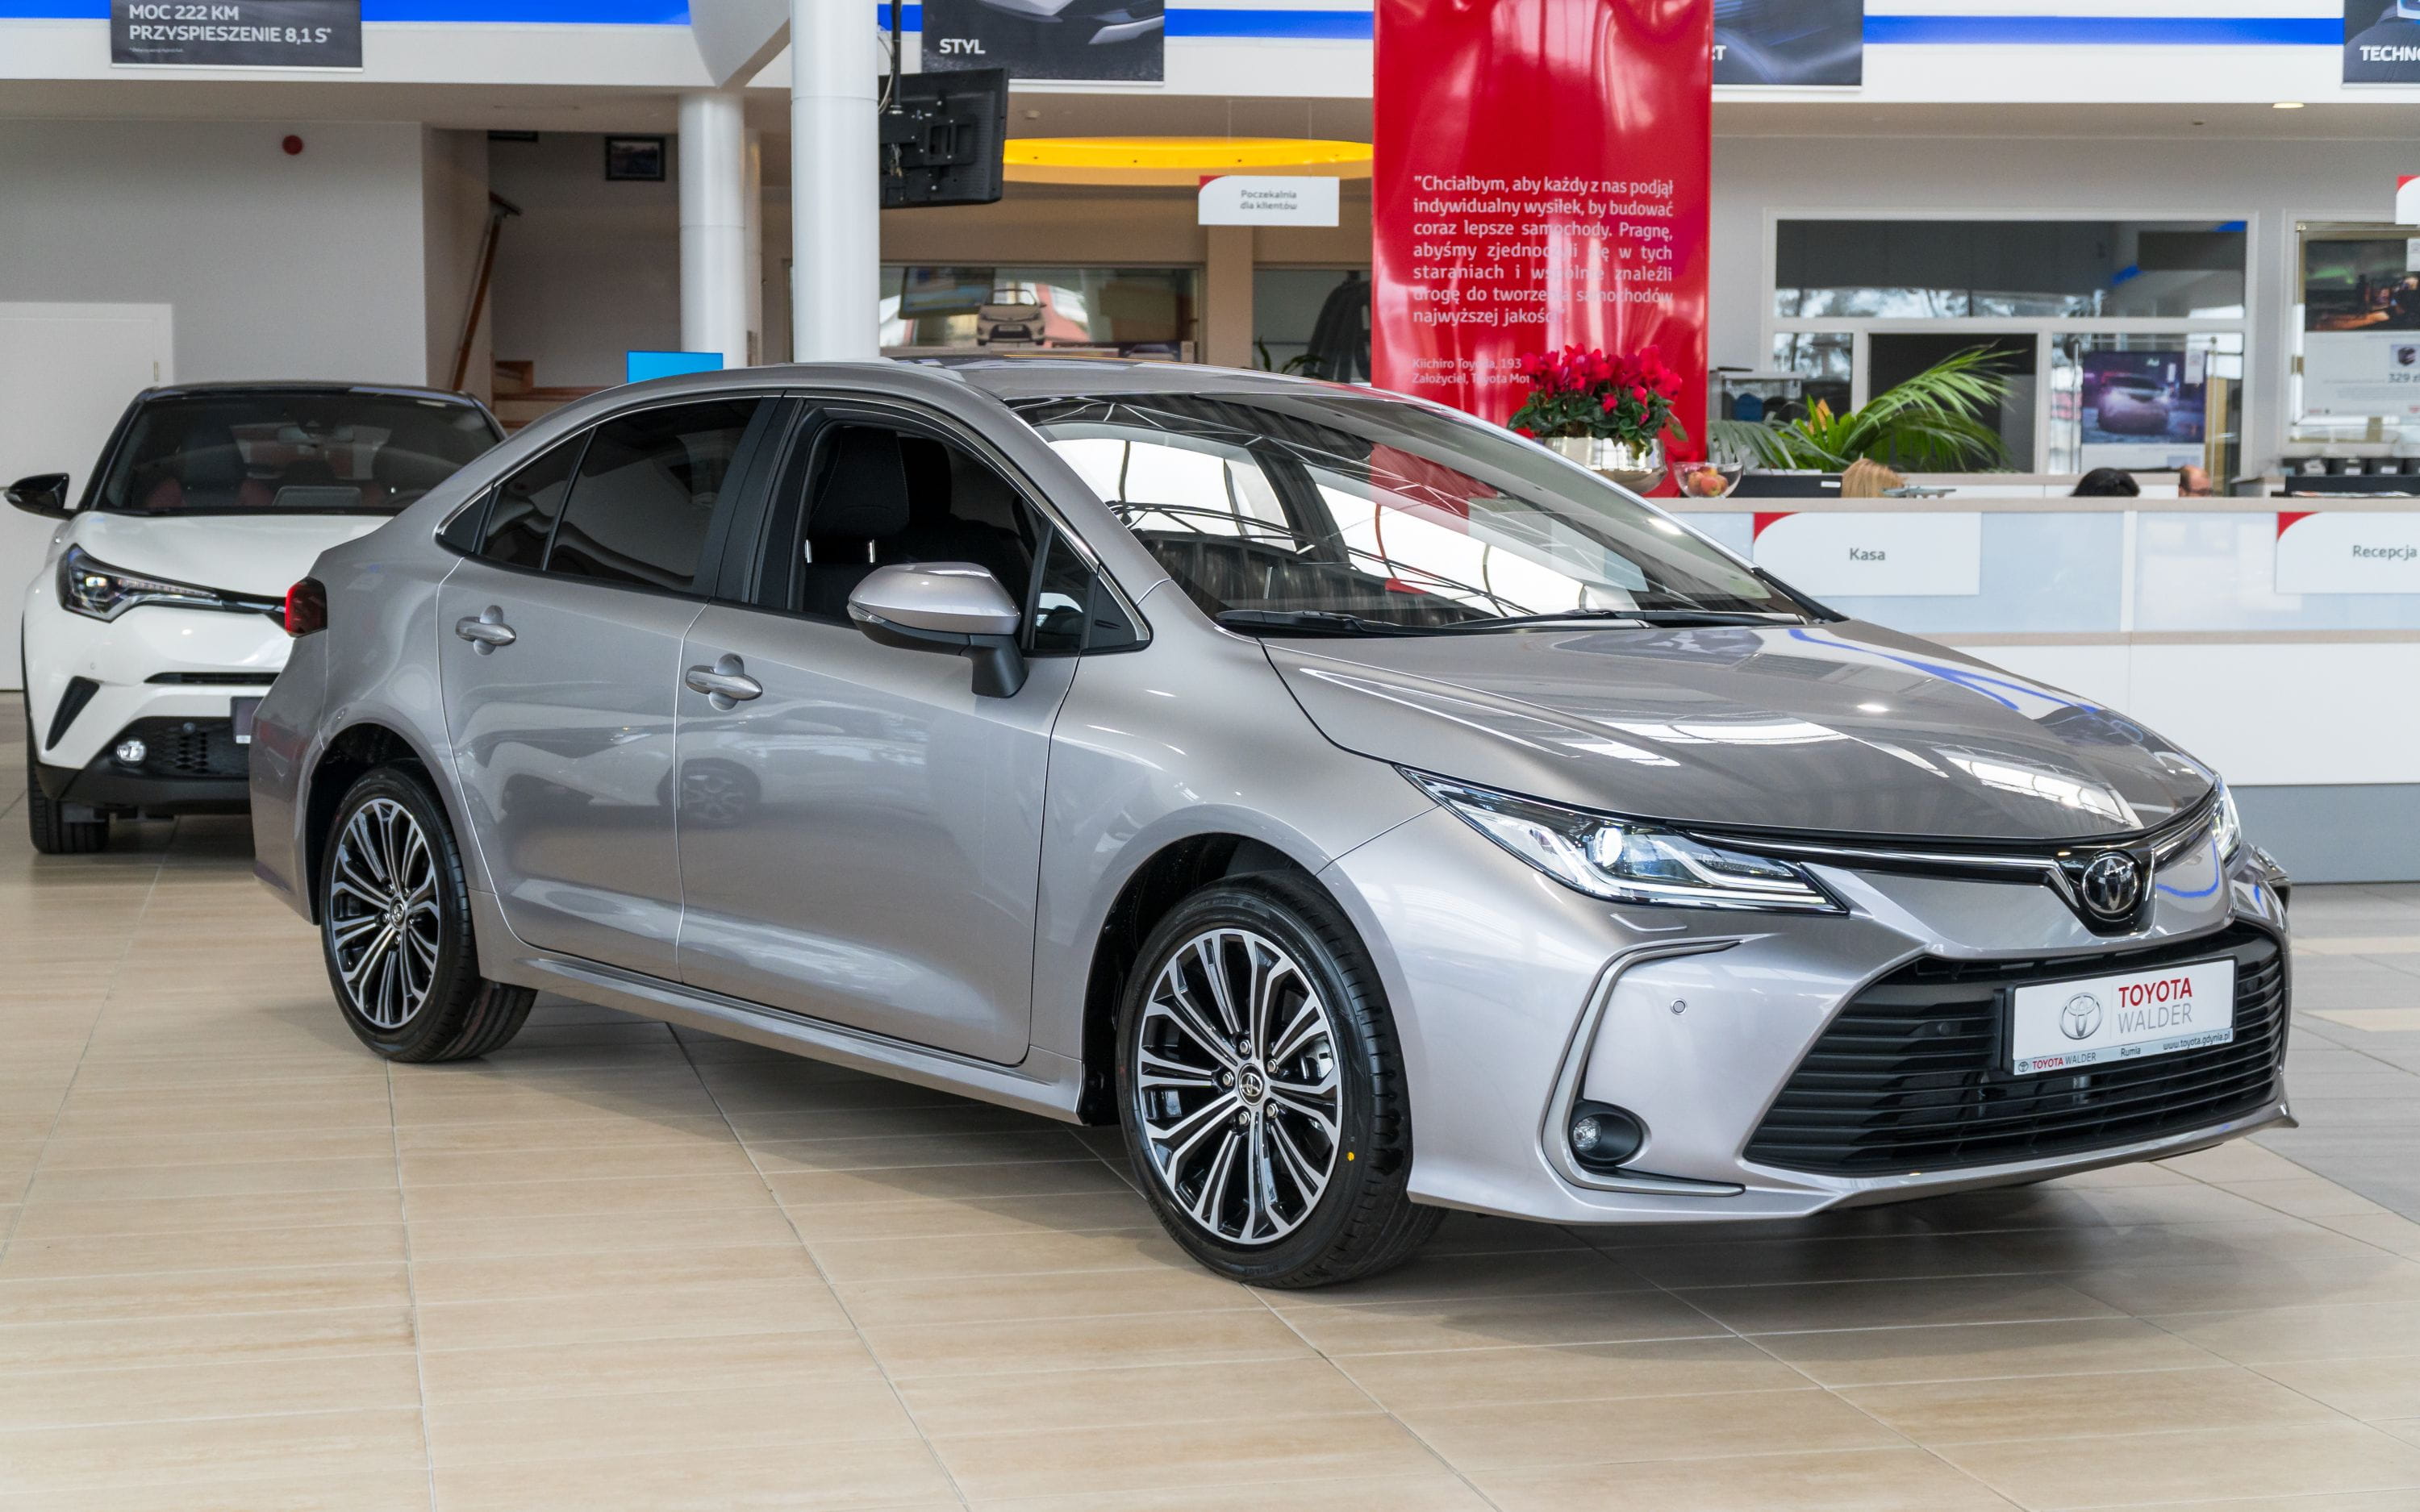 Toyota Walder zaprasza na dni nowej Corolli GDAŃSK